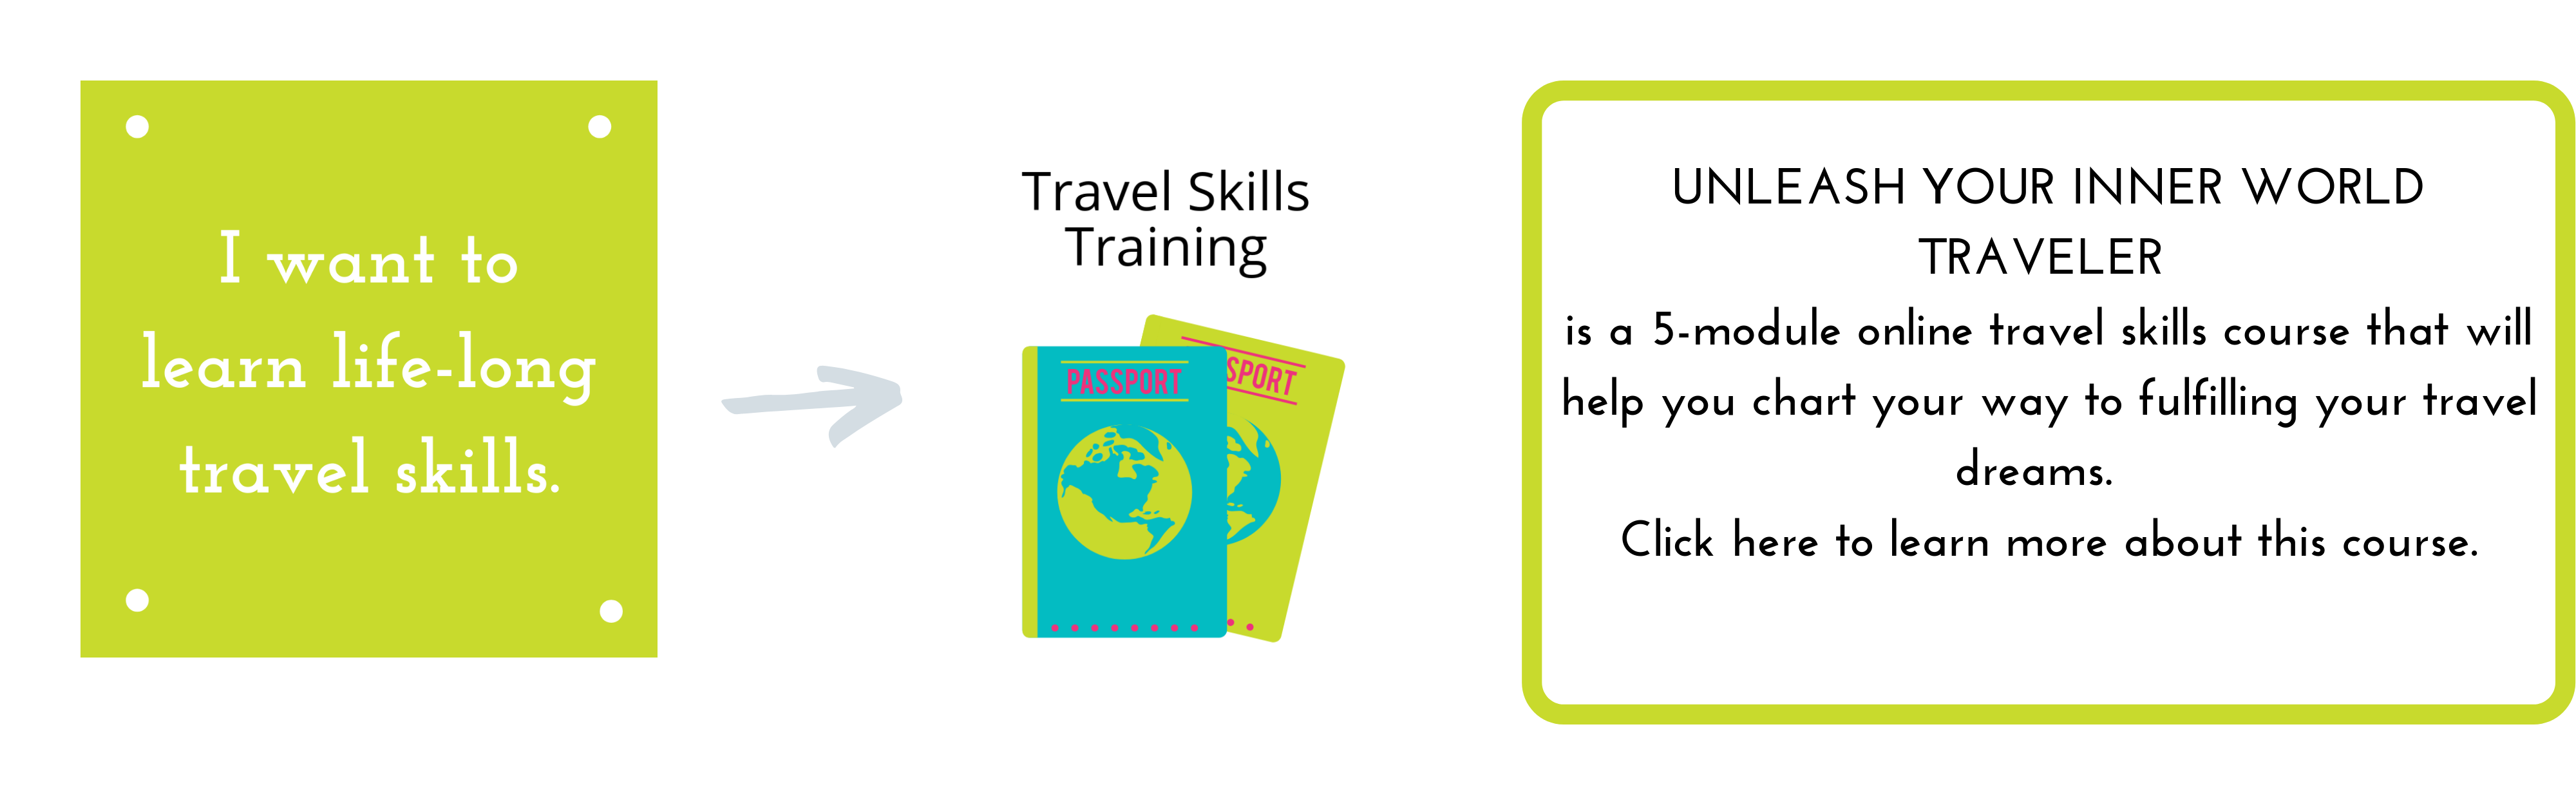 Travel Skills Training